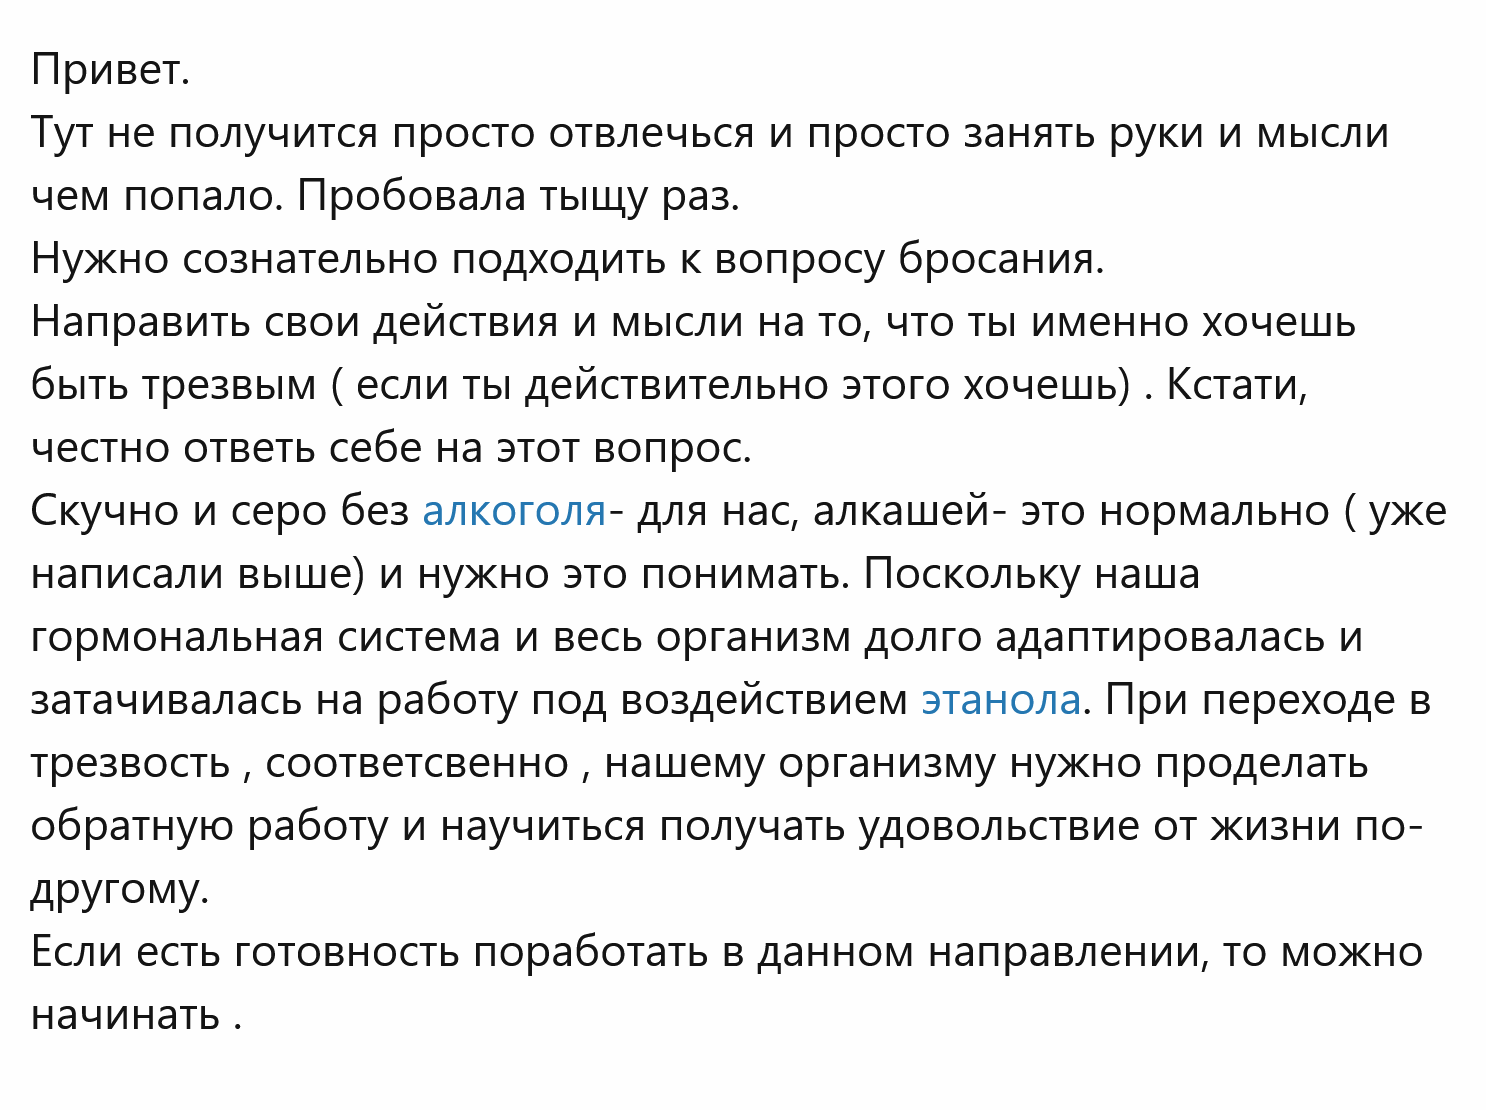 Сообщение анонимного пользователя на форуме взаимопомощи для людей с зависимостями. Источник: notdrink.ru